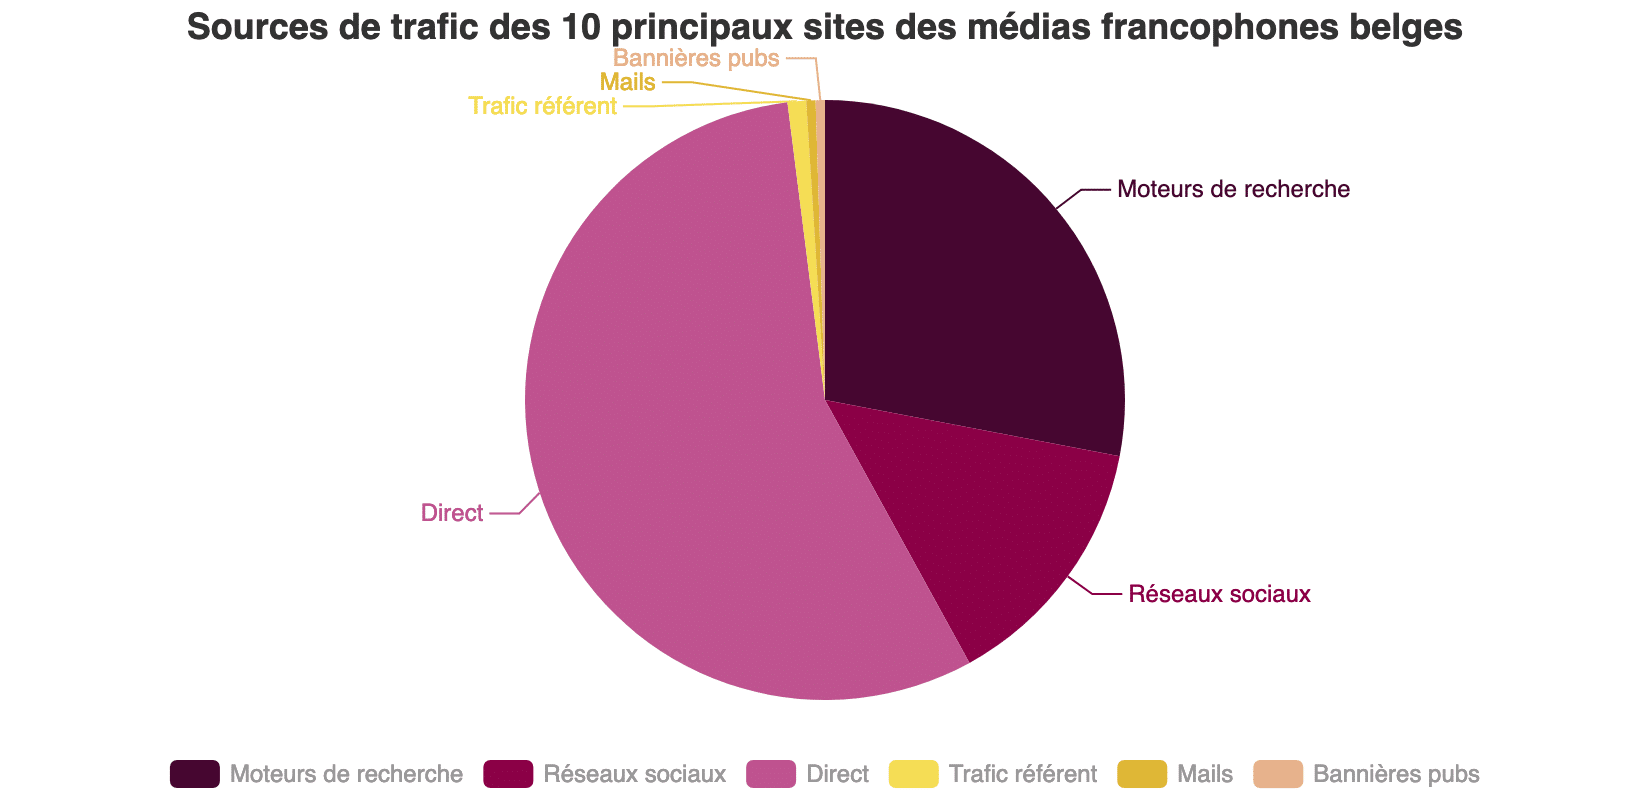 Voici les chiffres-clés des 10 principaux sites des médias francophones belges